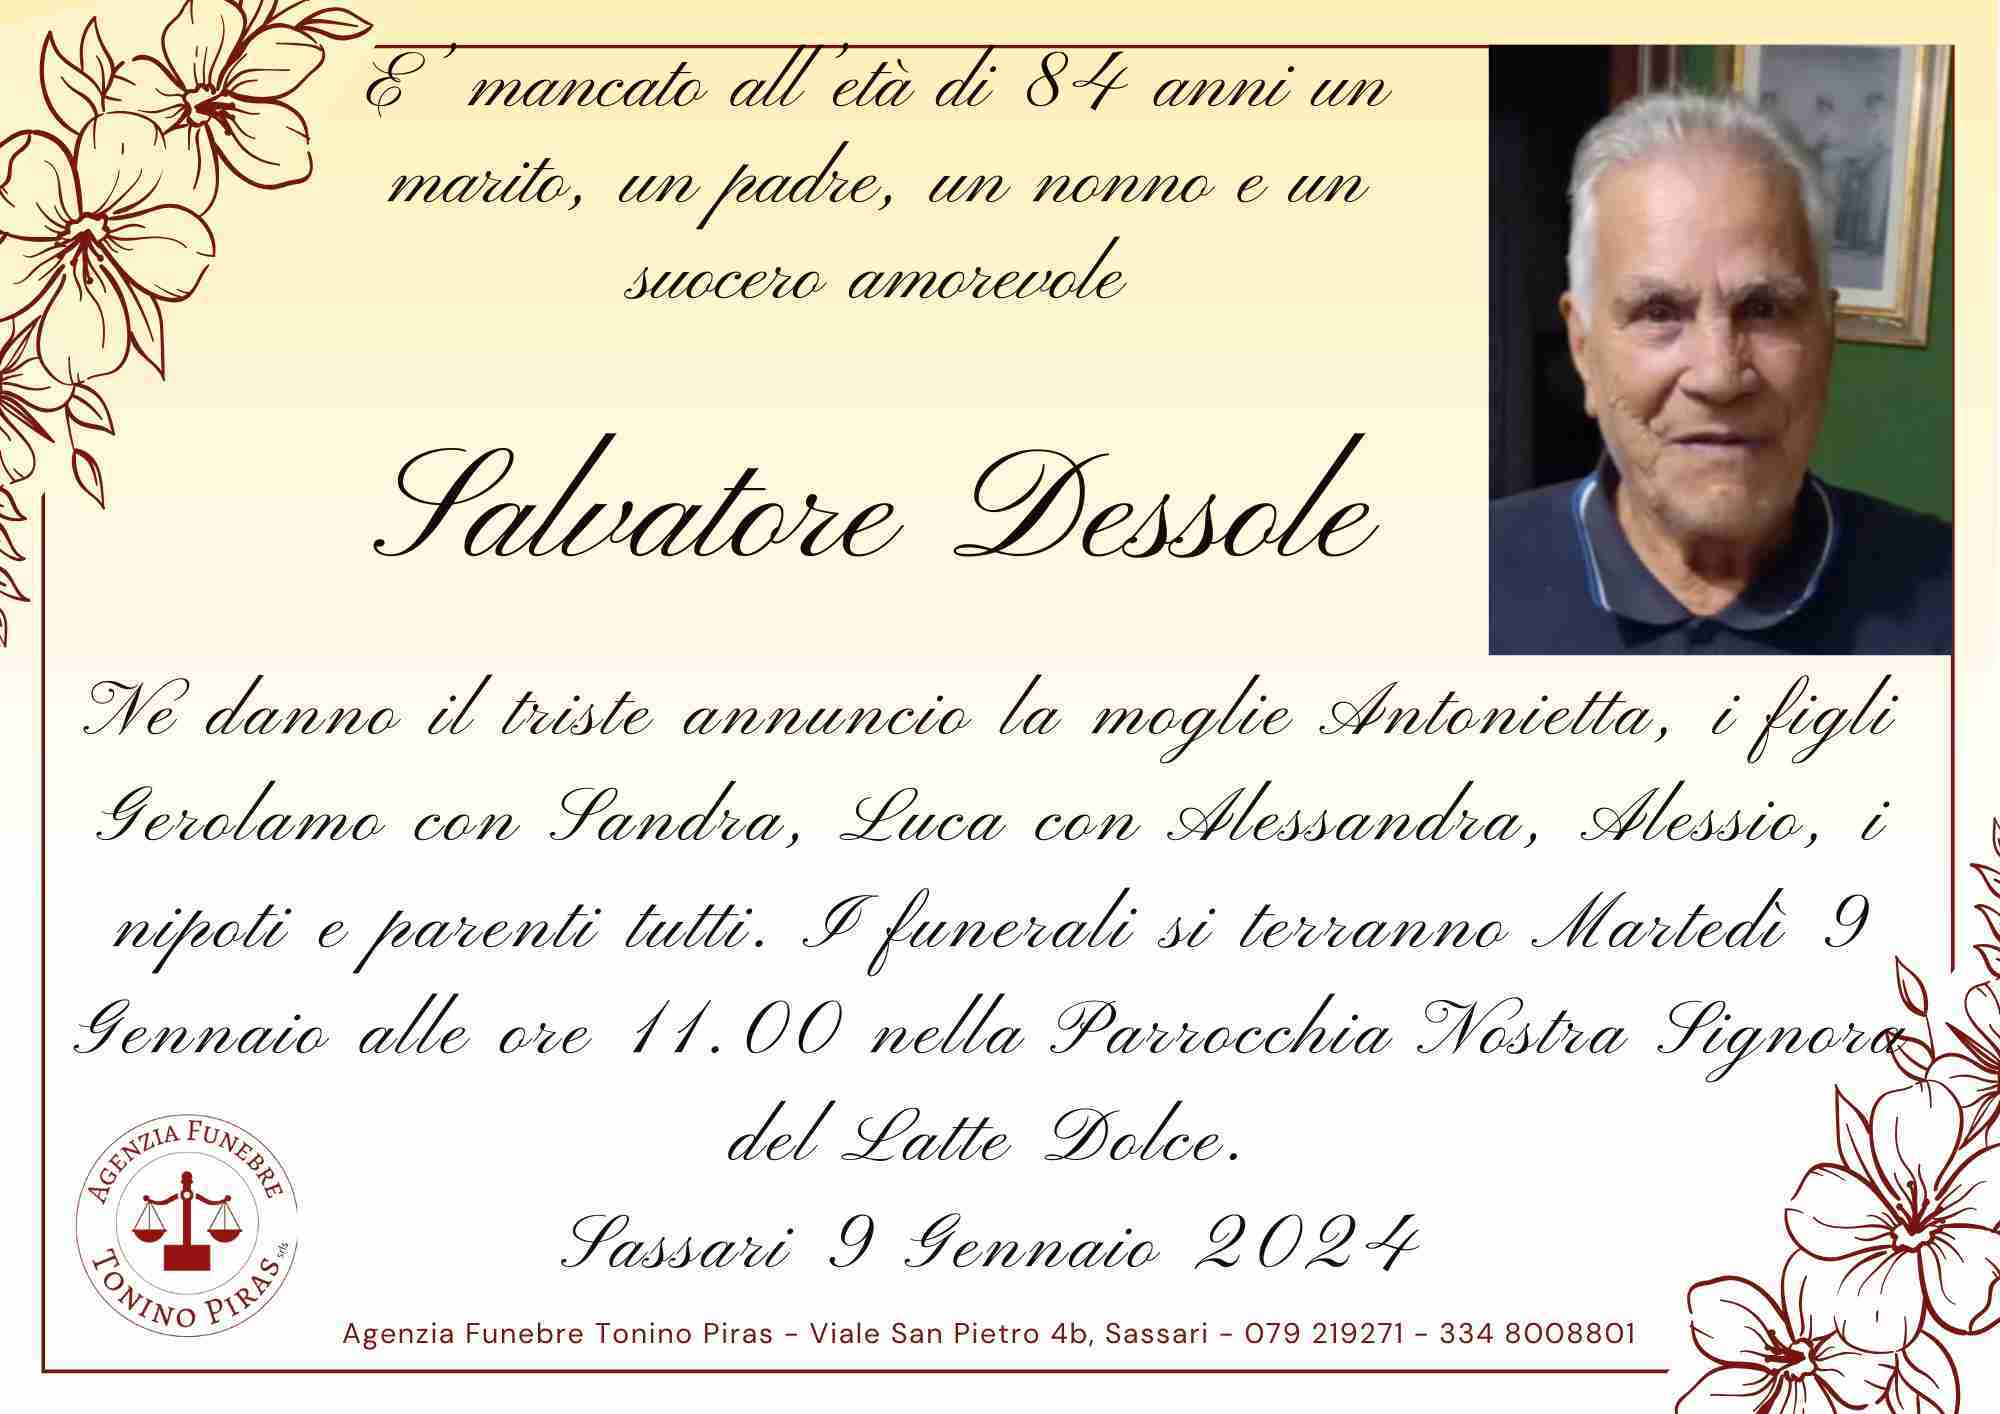 Salvatore Dessole